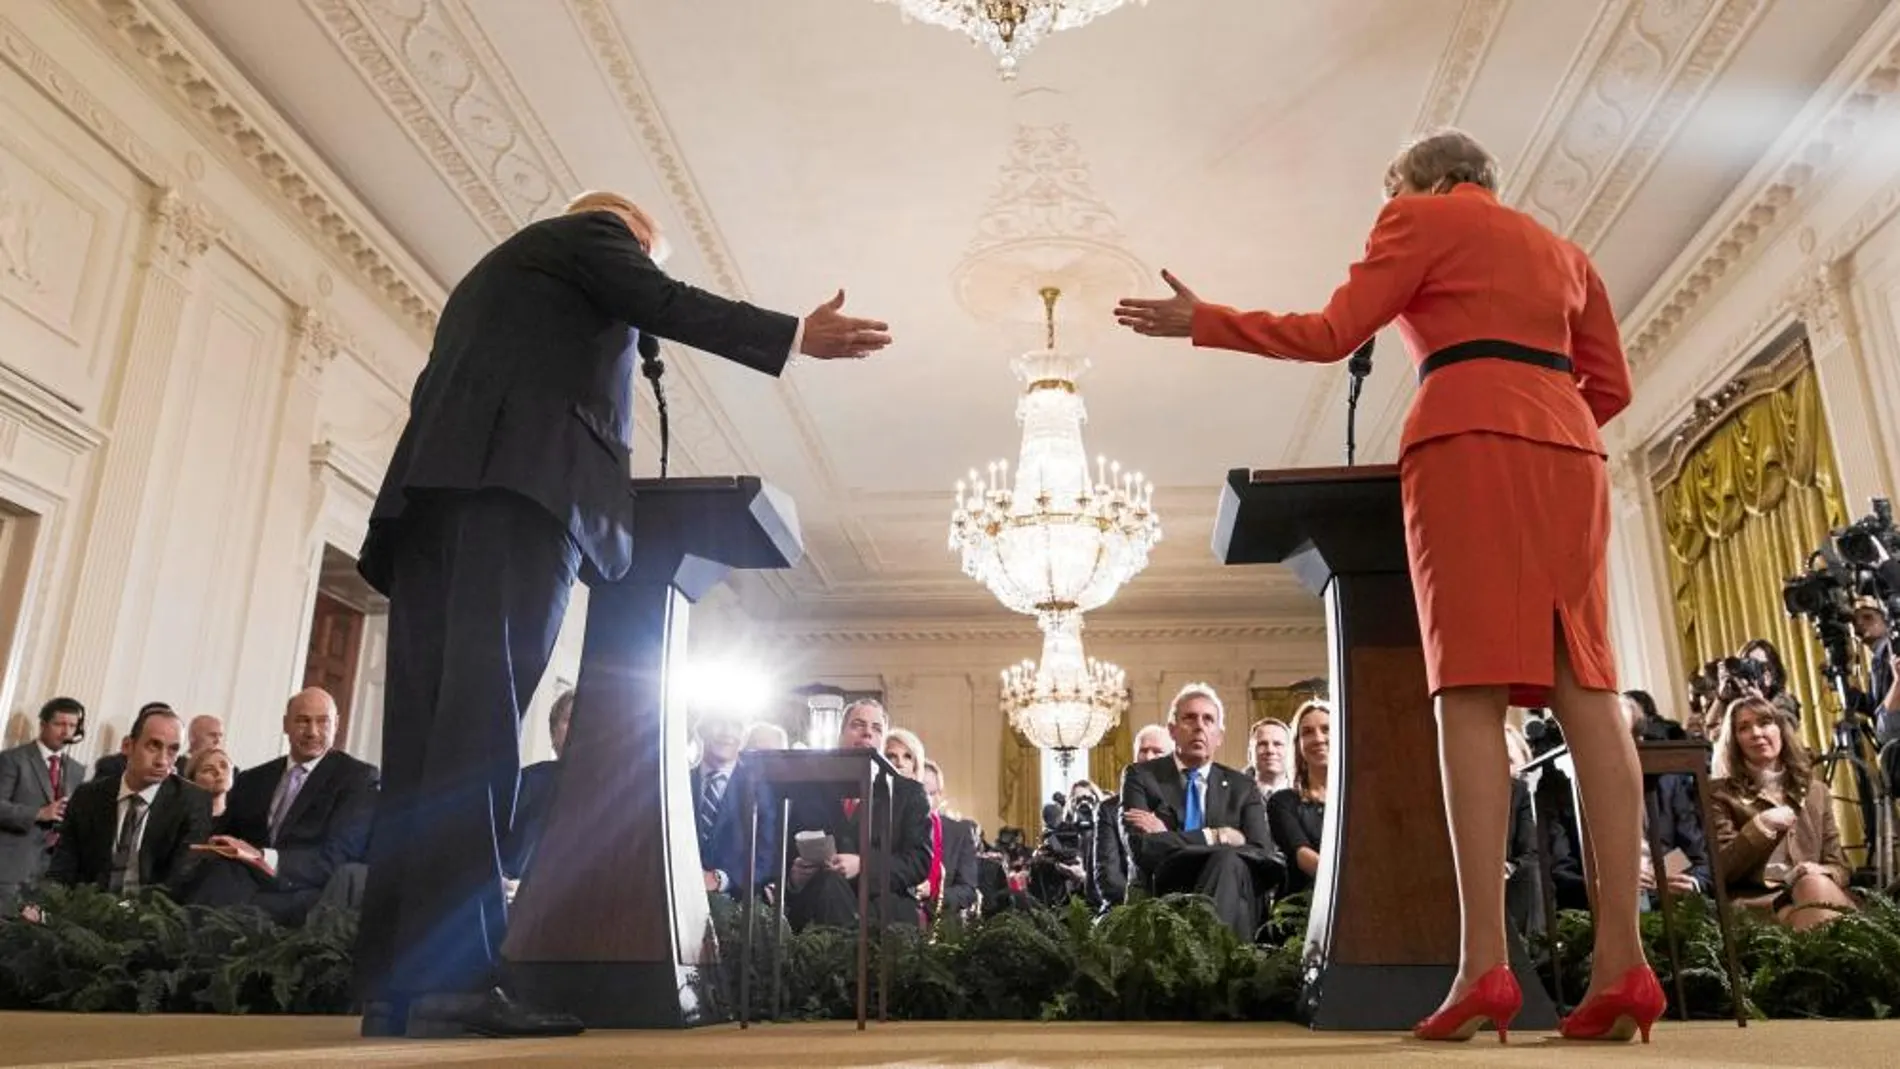 Conjuntados. Donald Trump y la primera ministra británica en la rueda de prensa en la Casa Blanca. Theresa May vistió traje rojo, el color habitual de las corbatas del presidente de EE UU